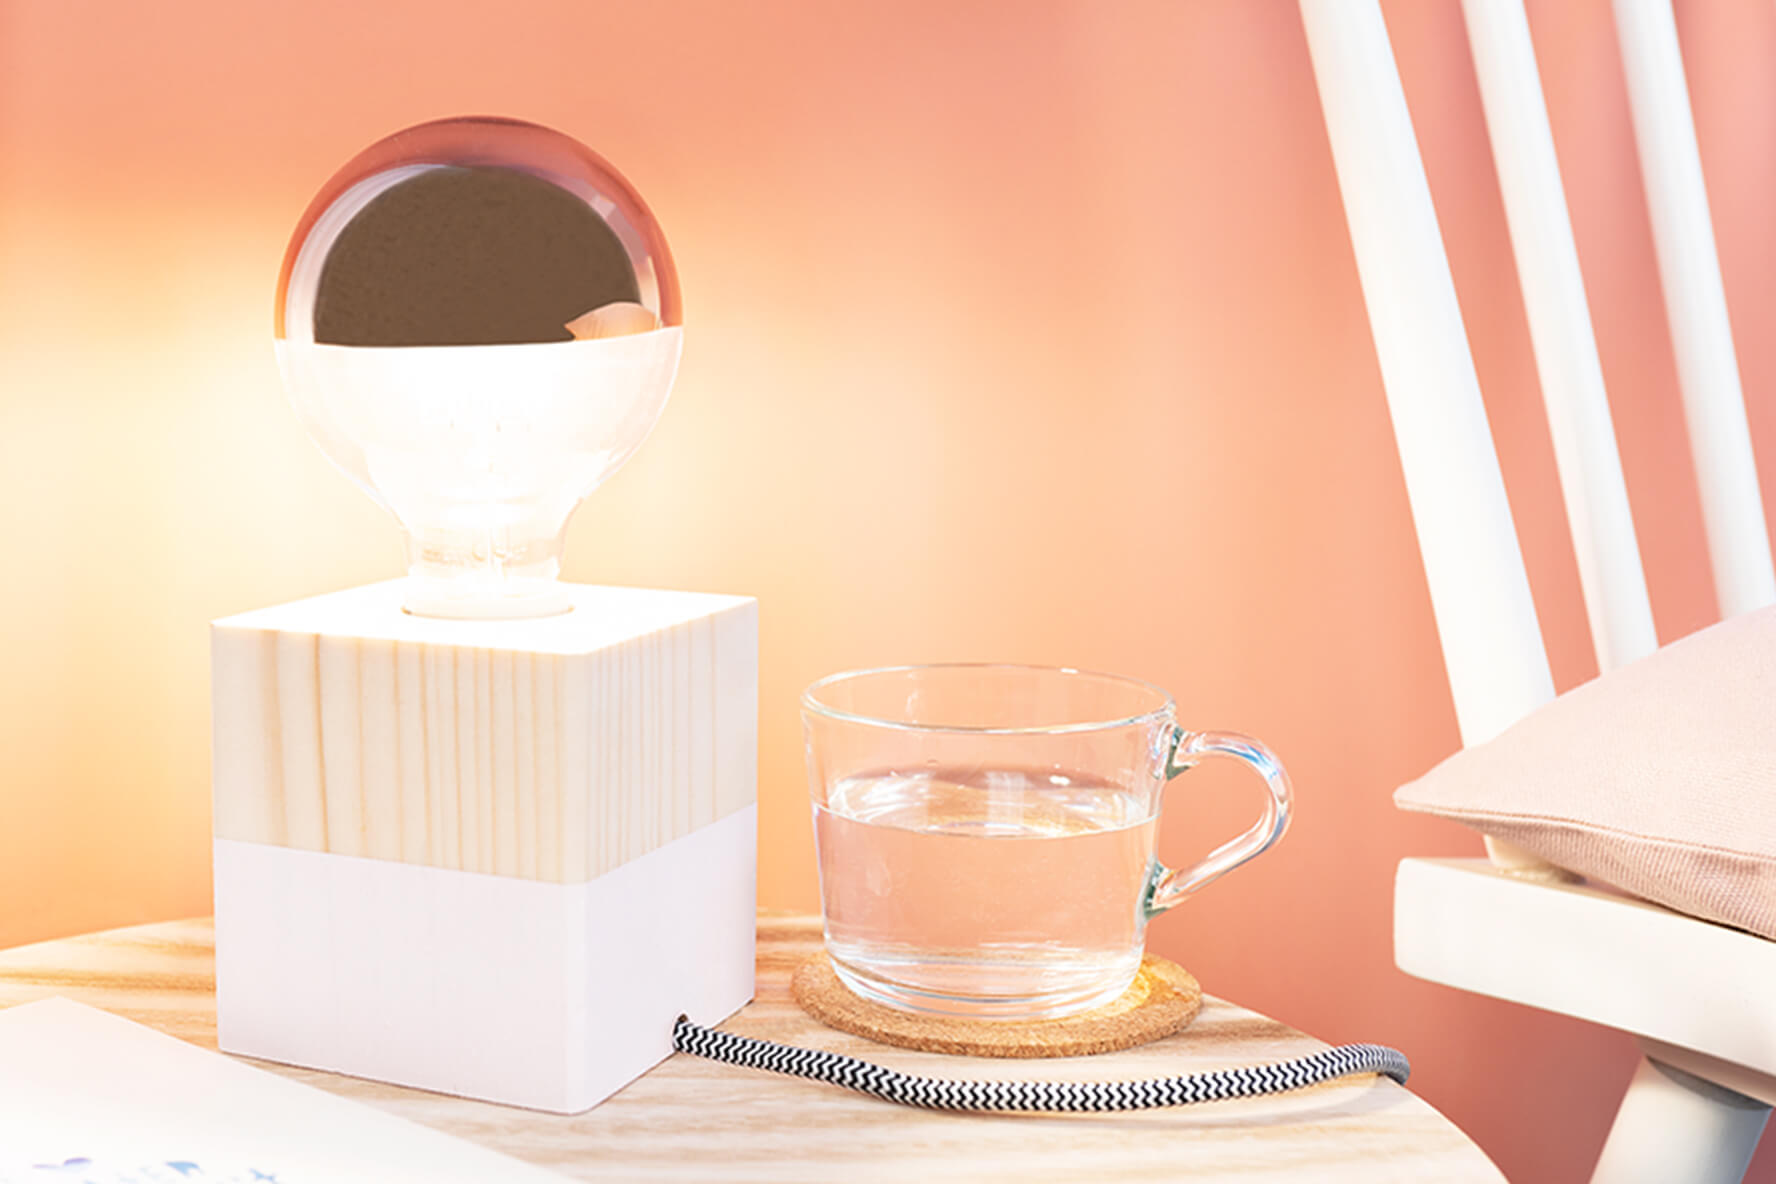 Lampe OBI – Tipps Ideen für selber bauen | Hause zu und